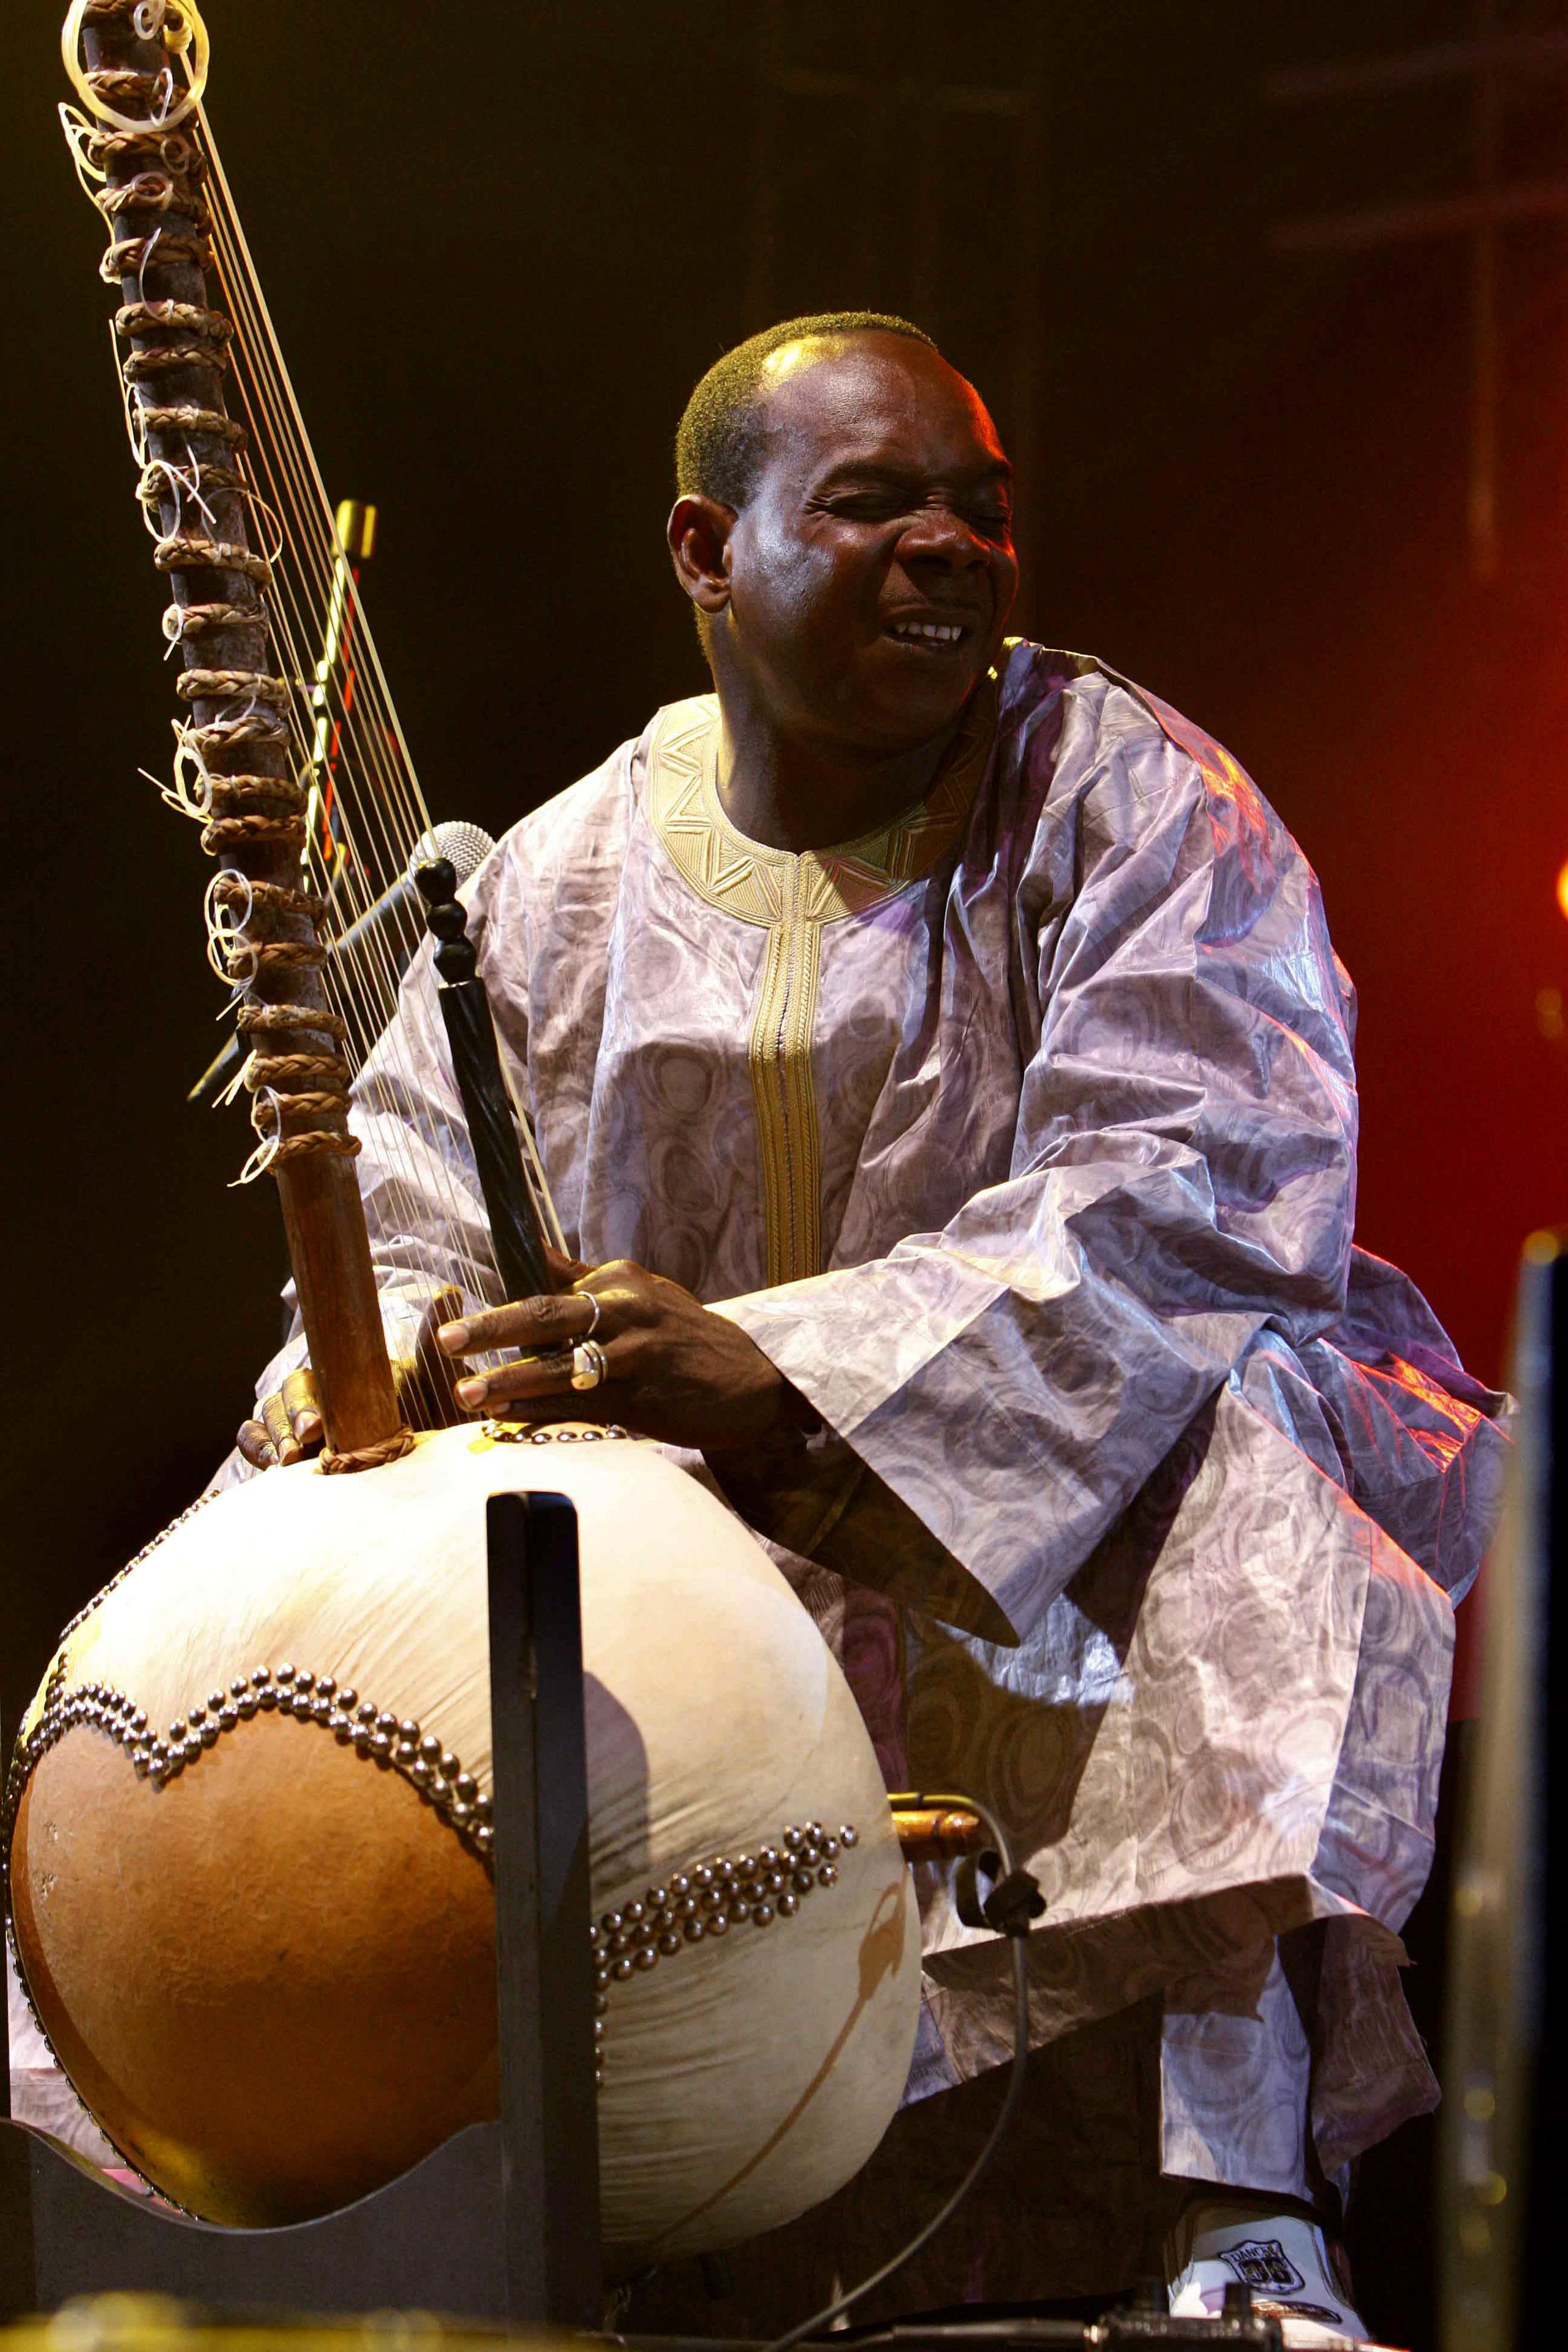 El músico malí Toumani Diabaté, uno de los mejores intérpretes de kora (instrumento tradicional africano).